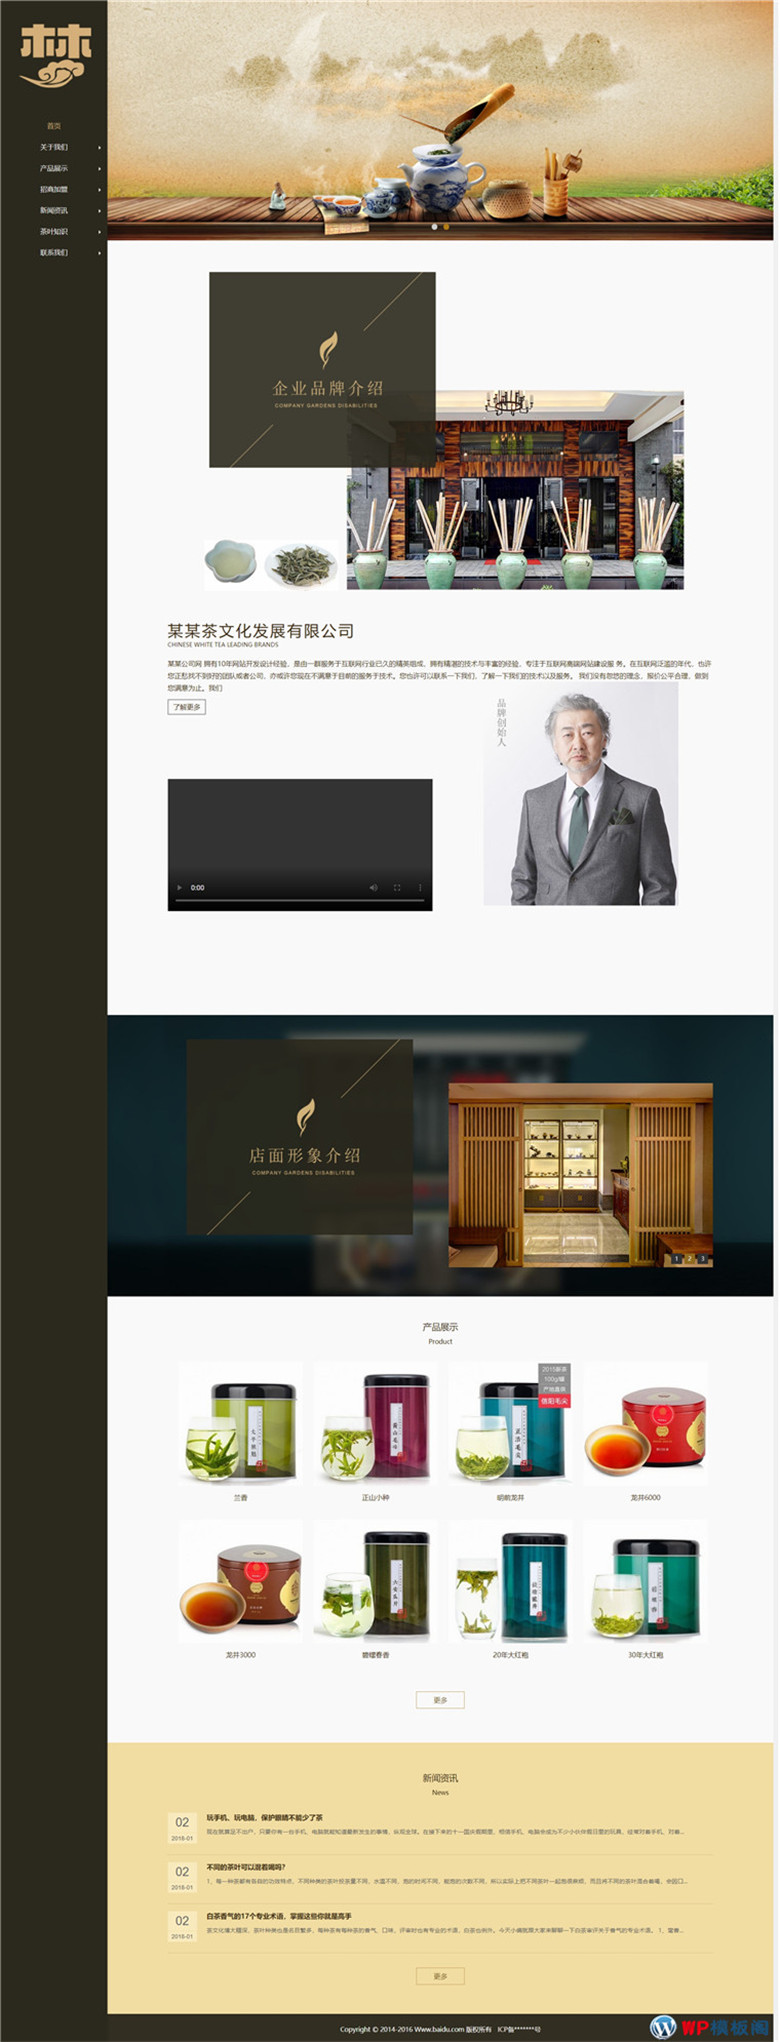 茶叶销售企业下载、茶艺茶文化展示型网站主题模板下载演示图